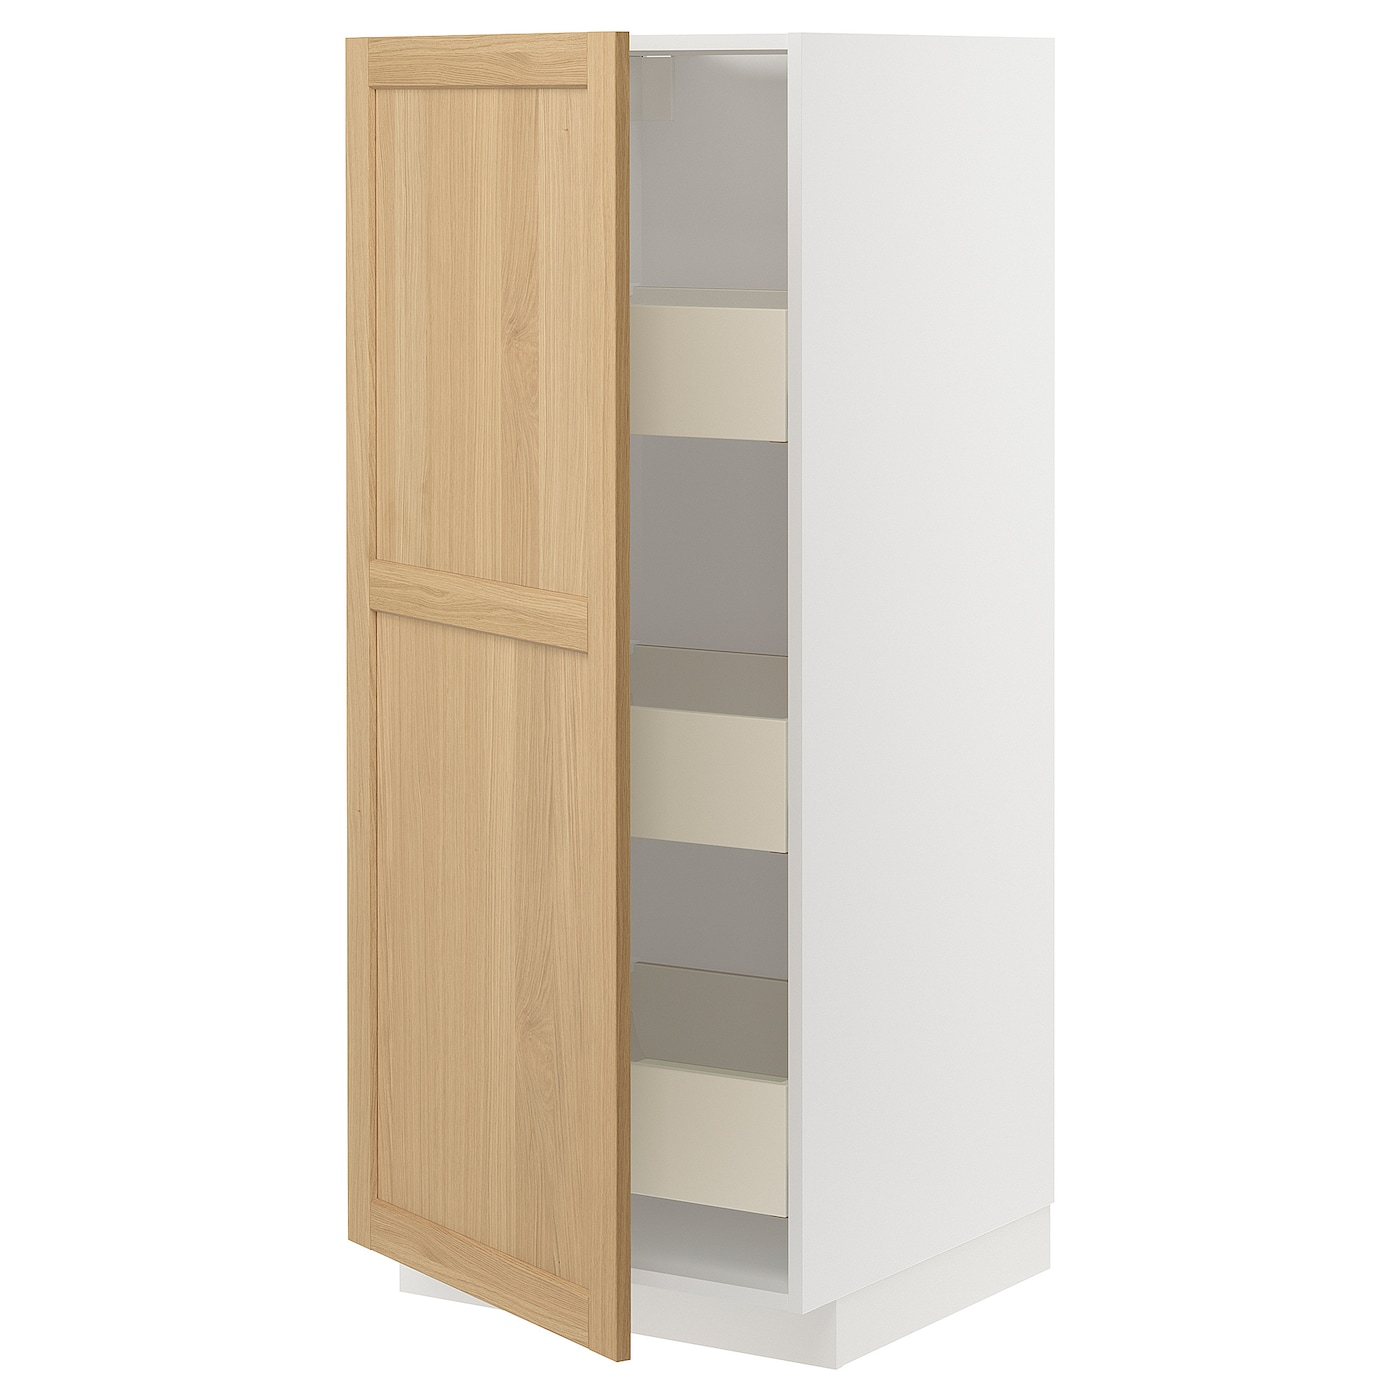 Напольный шкаф - METOD / MAXIMERA IKEA/ МЕТОД/ МАКСИМЕРА ИКЕА,  60х60х140 см, белый/ под беленый дуб